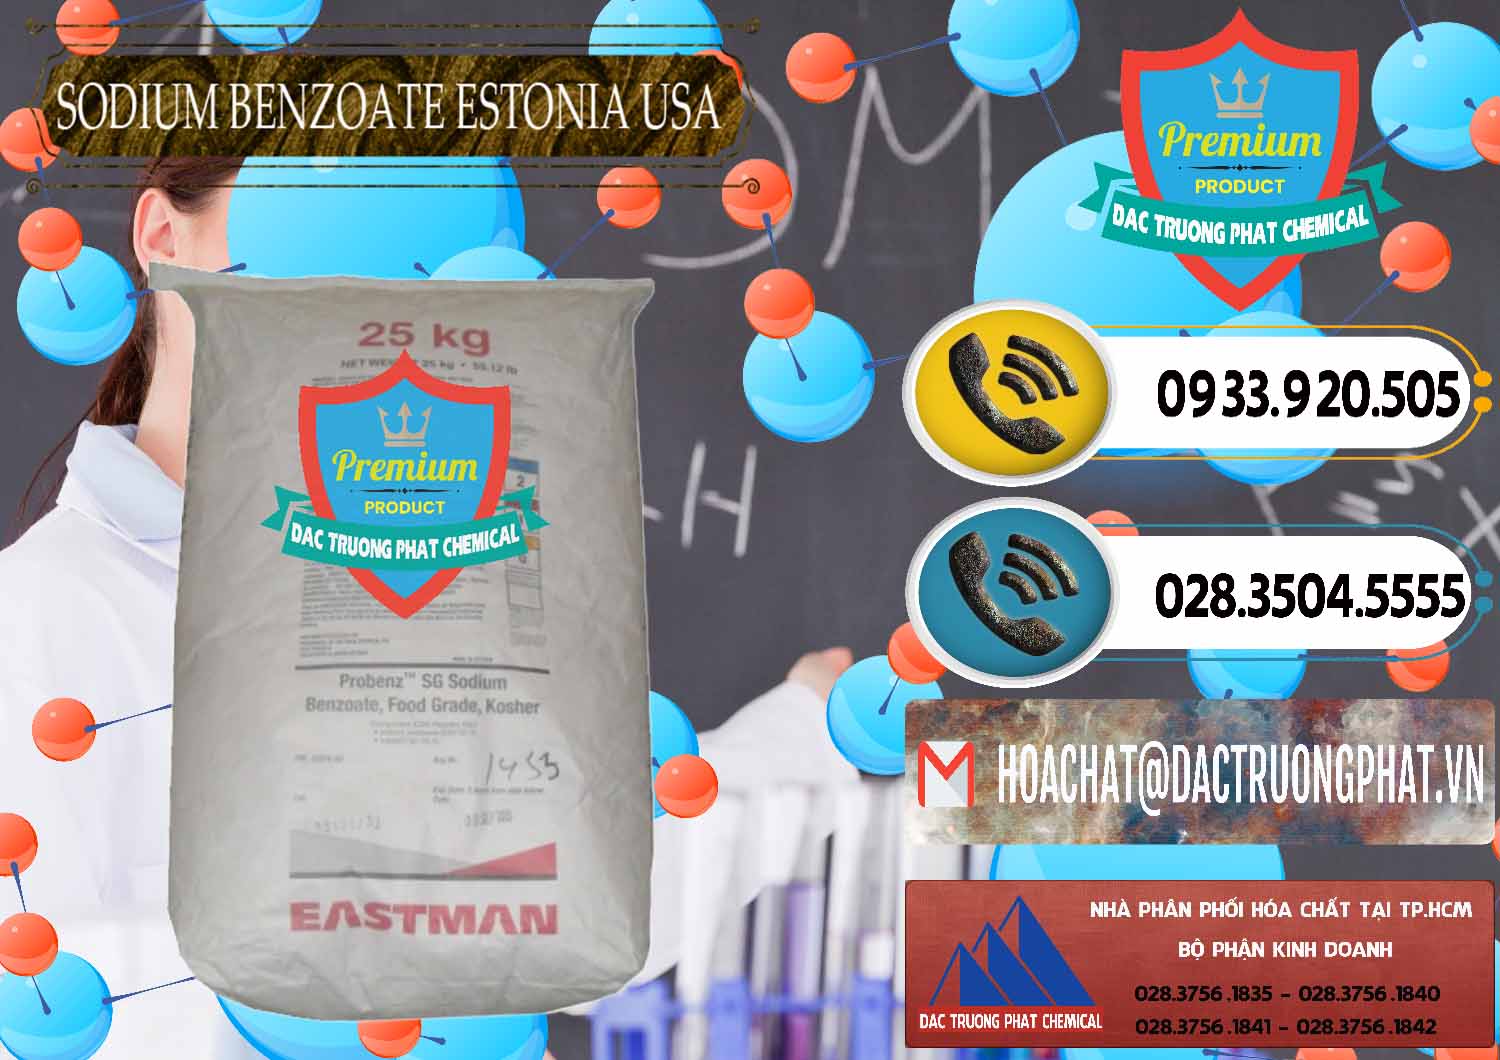 Công ty chuyên bán và cung ứng Sodium Benzoate - Mốc Bột Estonia Mỹ USA - 0468 - Cty chuyên bán _ phân phối hóa chất tại TP.HCM - hoachatdetnhuom.vn